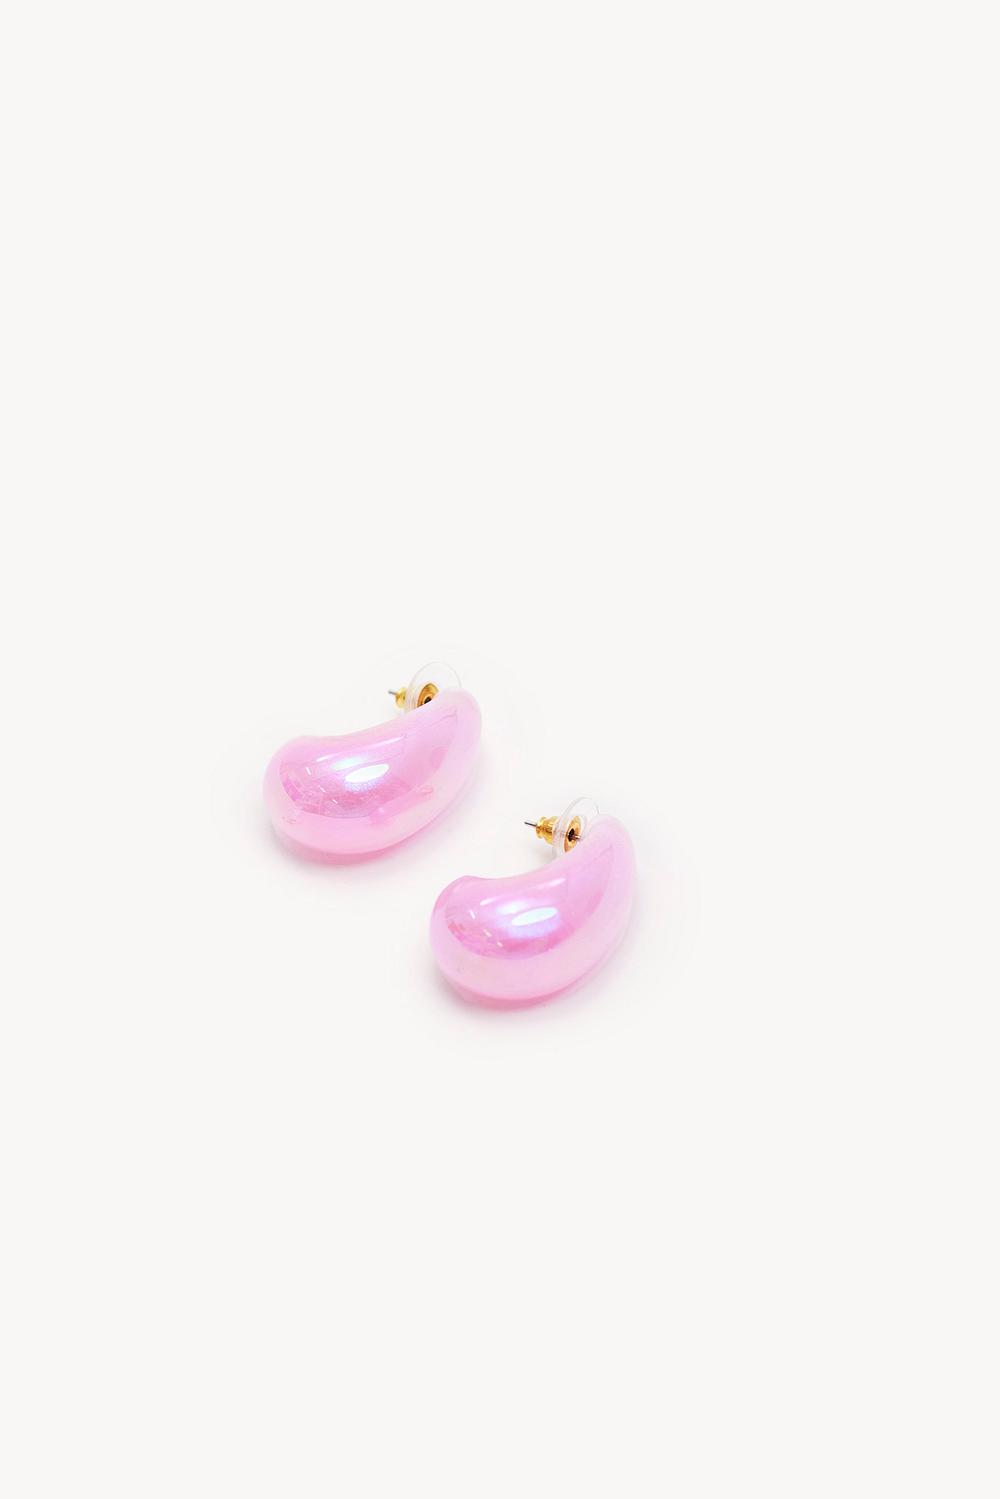 Roze waterdrop oorbellen